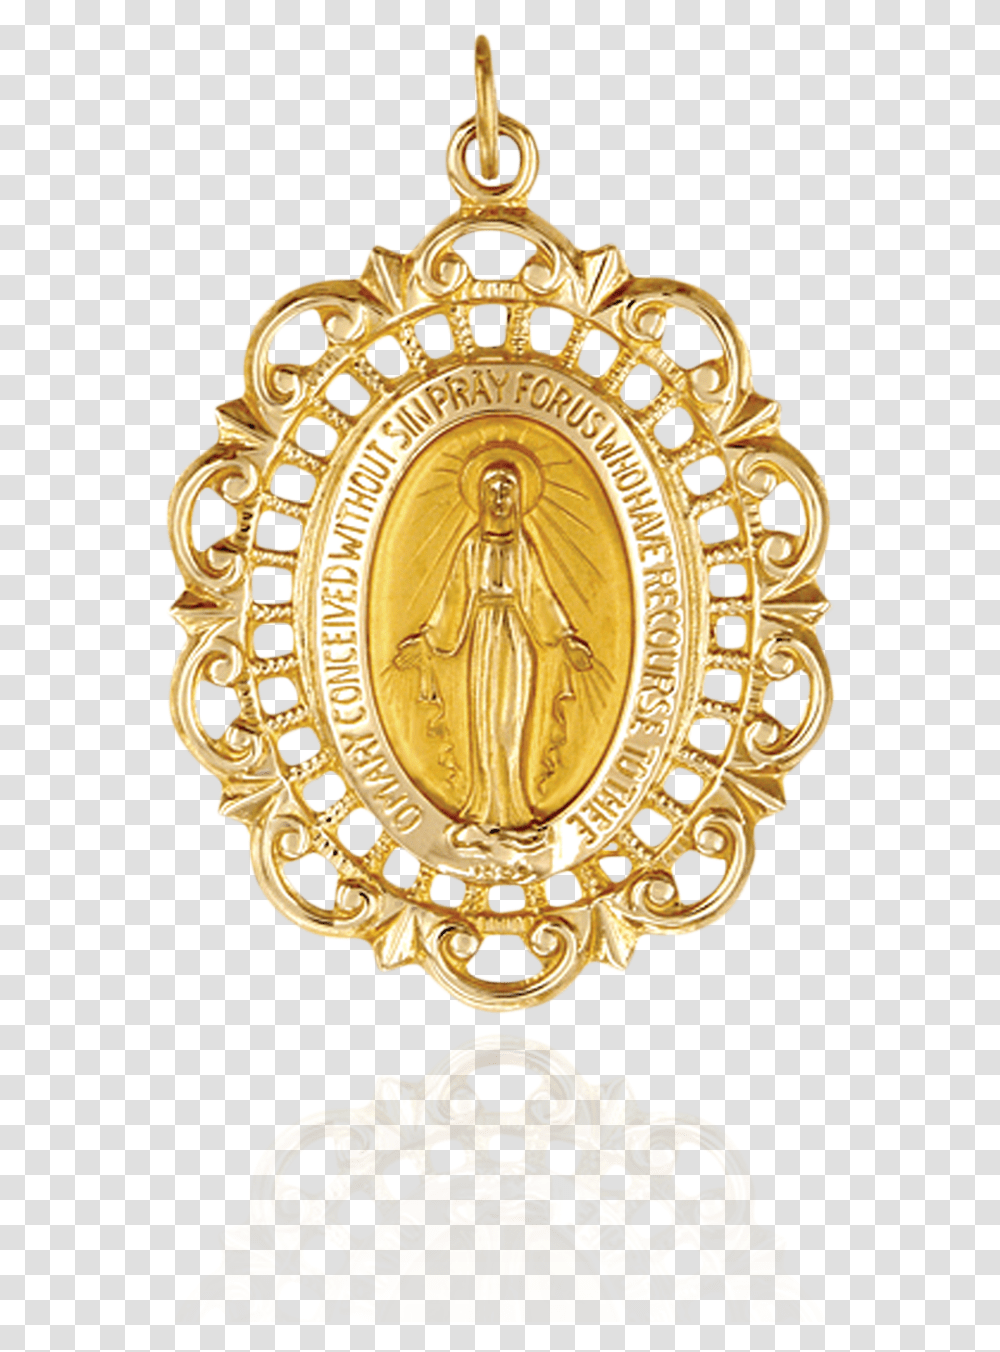 Miraculous Medallion In Filigree Frame Emblem, Gold, Chandelier, Lamp Transparent Png